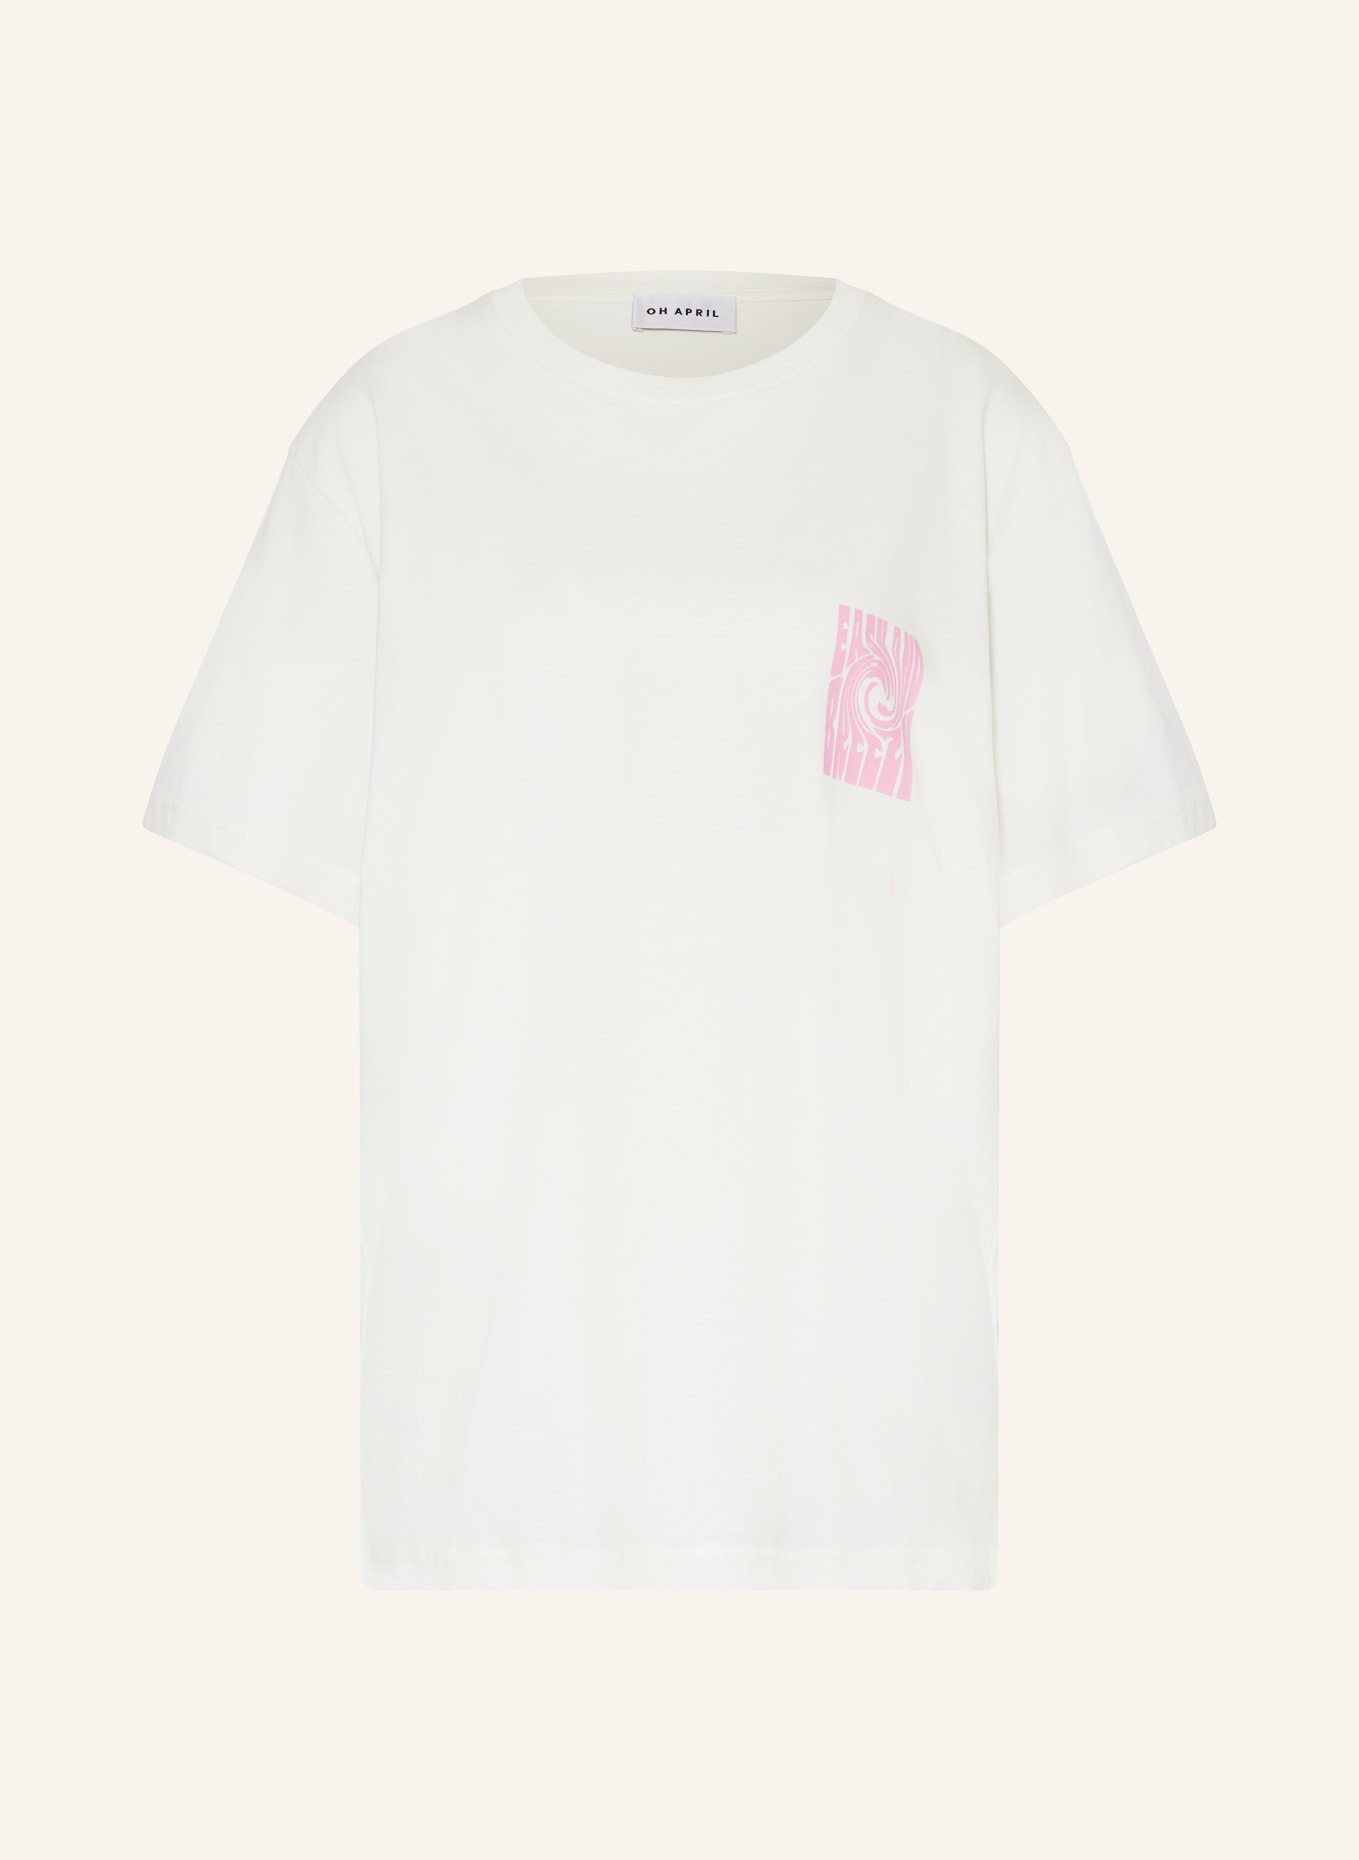 OH APRIL T-shirt BOYFRIEND, Color: WHITE/ PINK (Image 1)